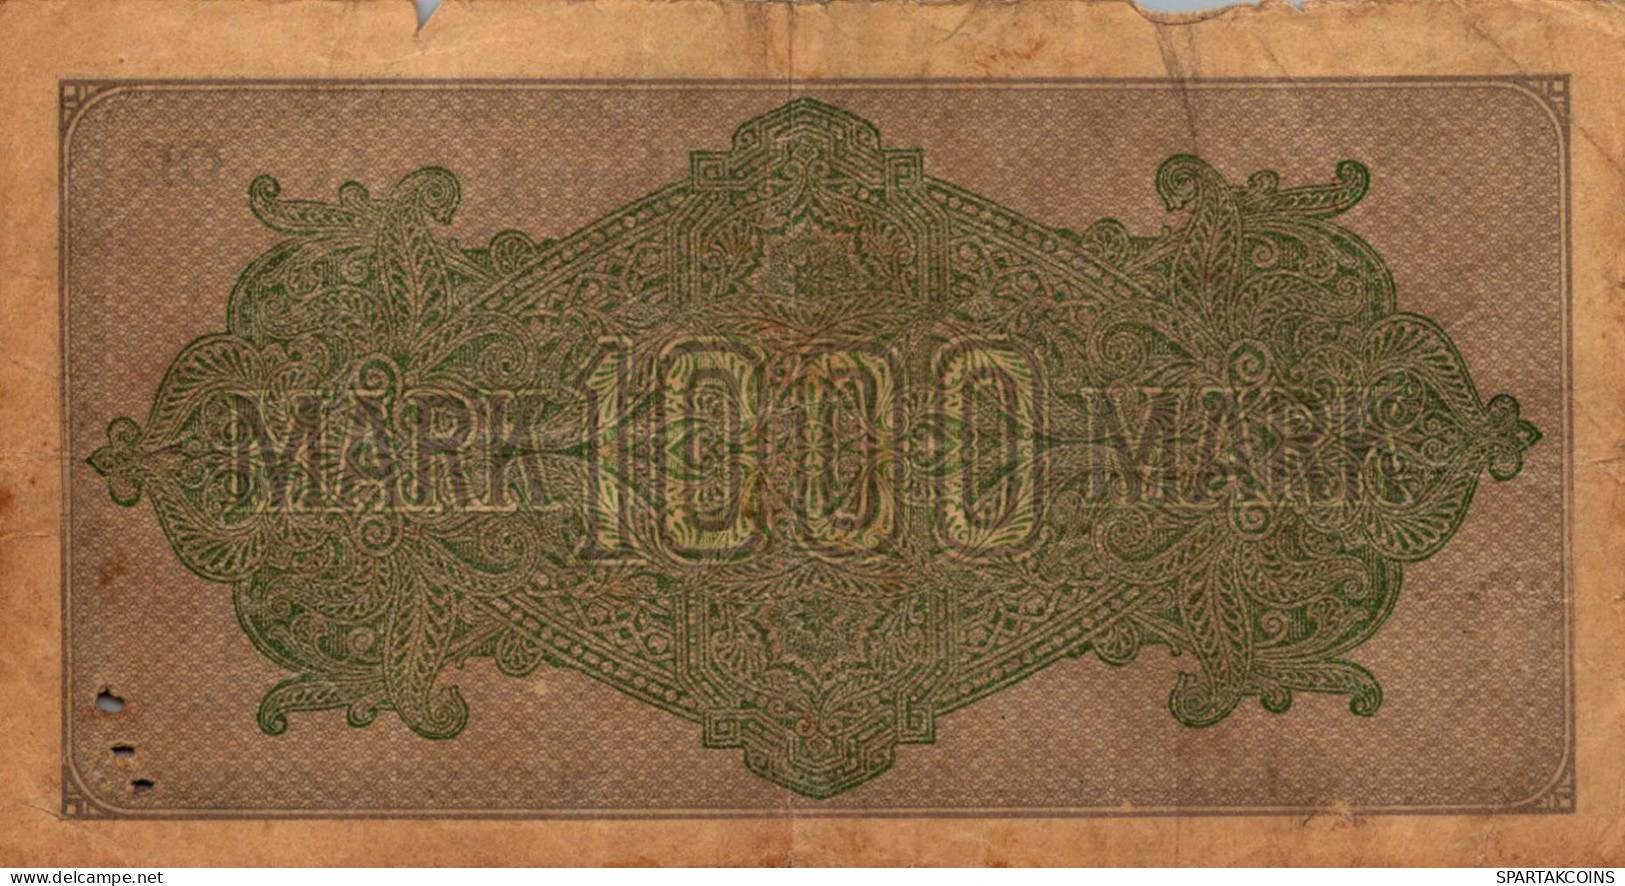 1000 MARK 1922 Stadt BERLIN DEUTSCHLAND Papiergeld Banknote #PK821 - [11] Emissions Locales